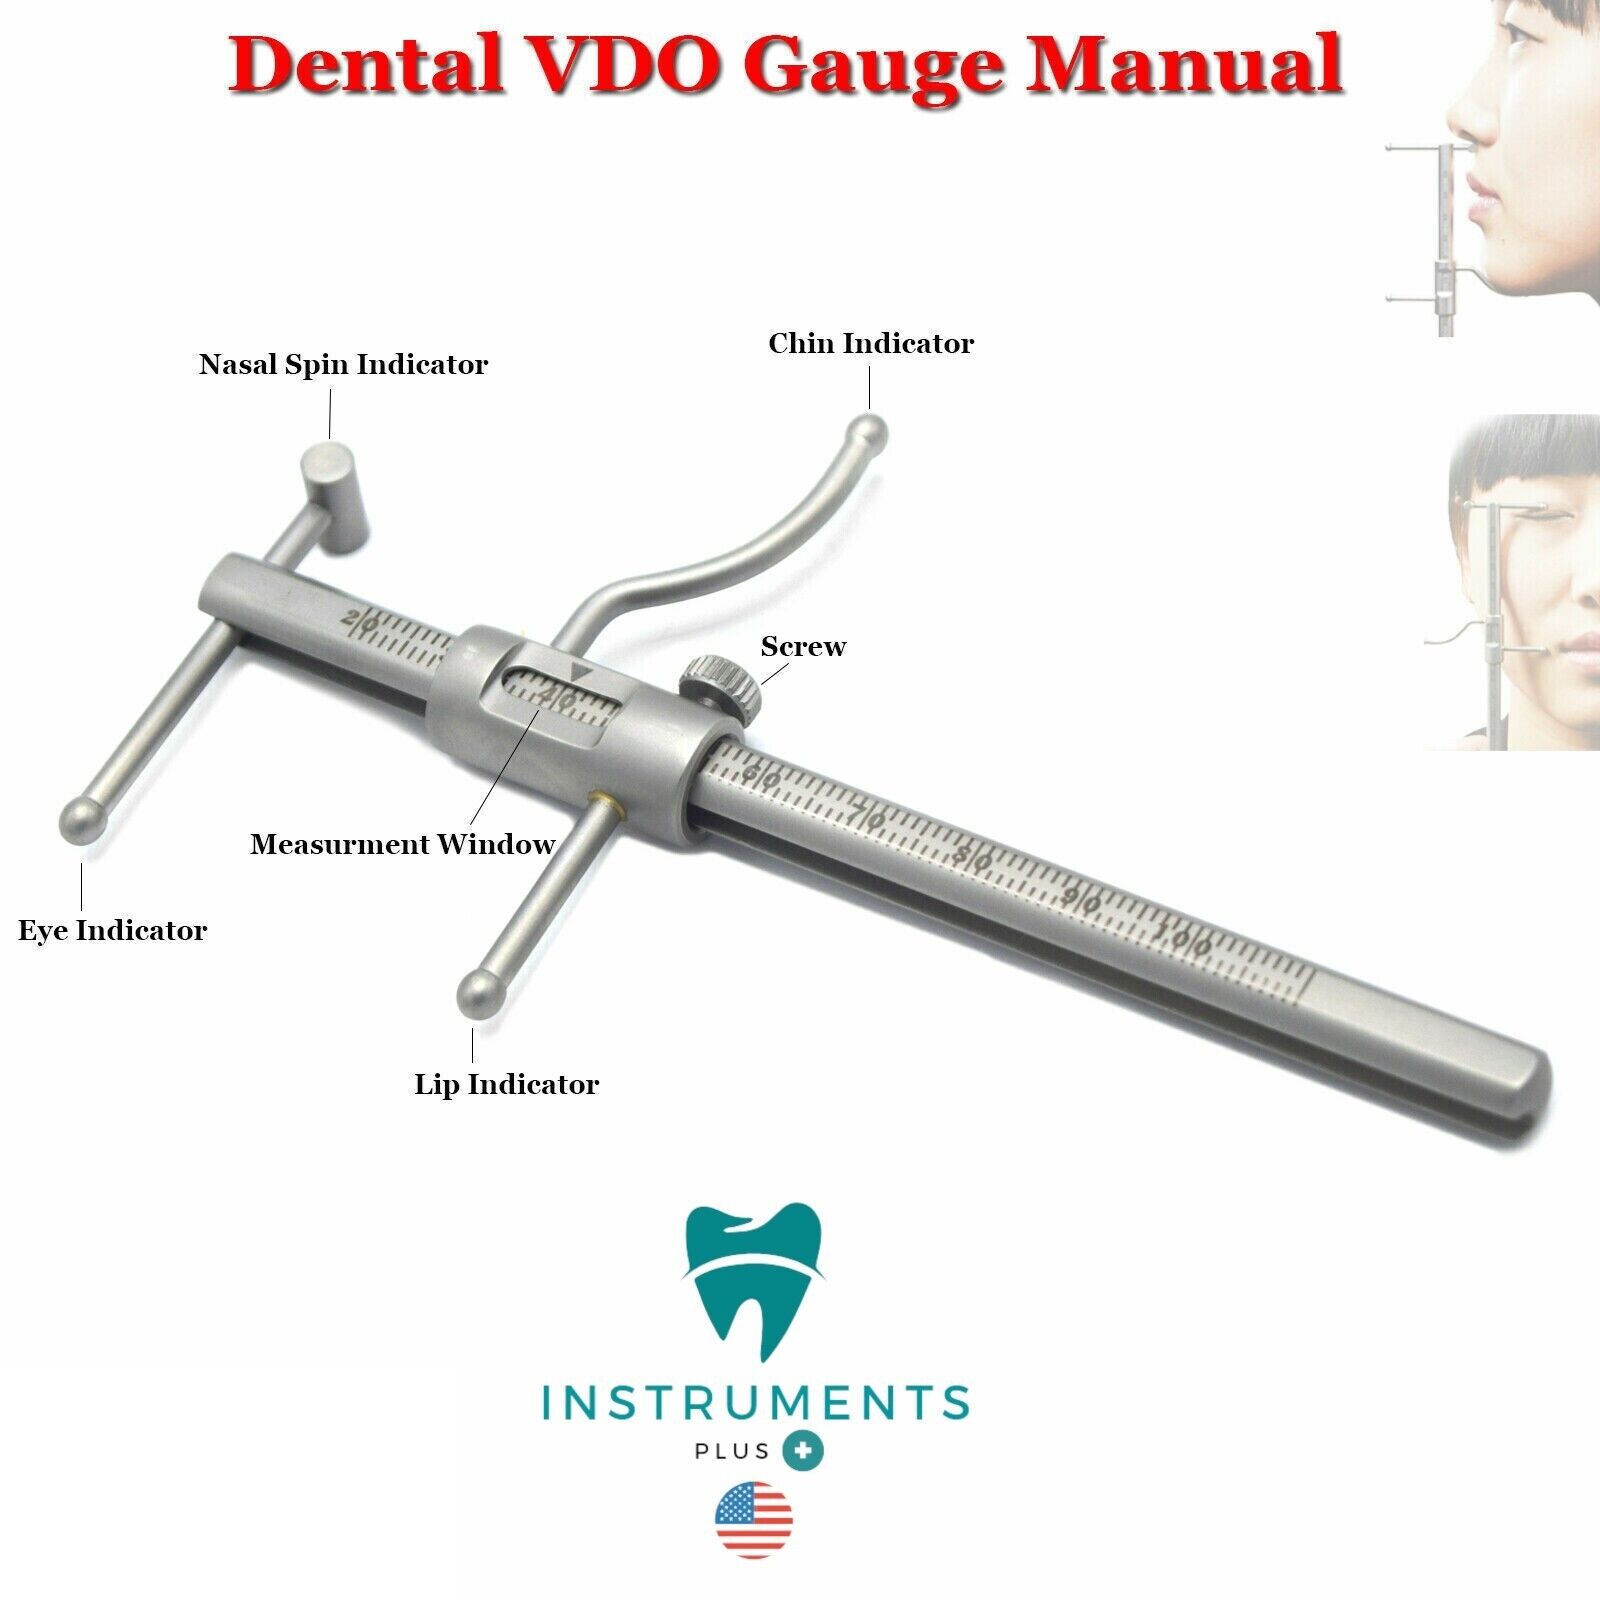 New Premium Grade Gauge Material High-quality Stainless Steel Dental VDO Ruler